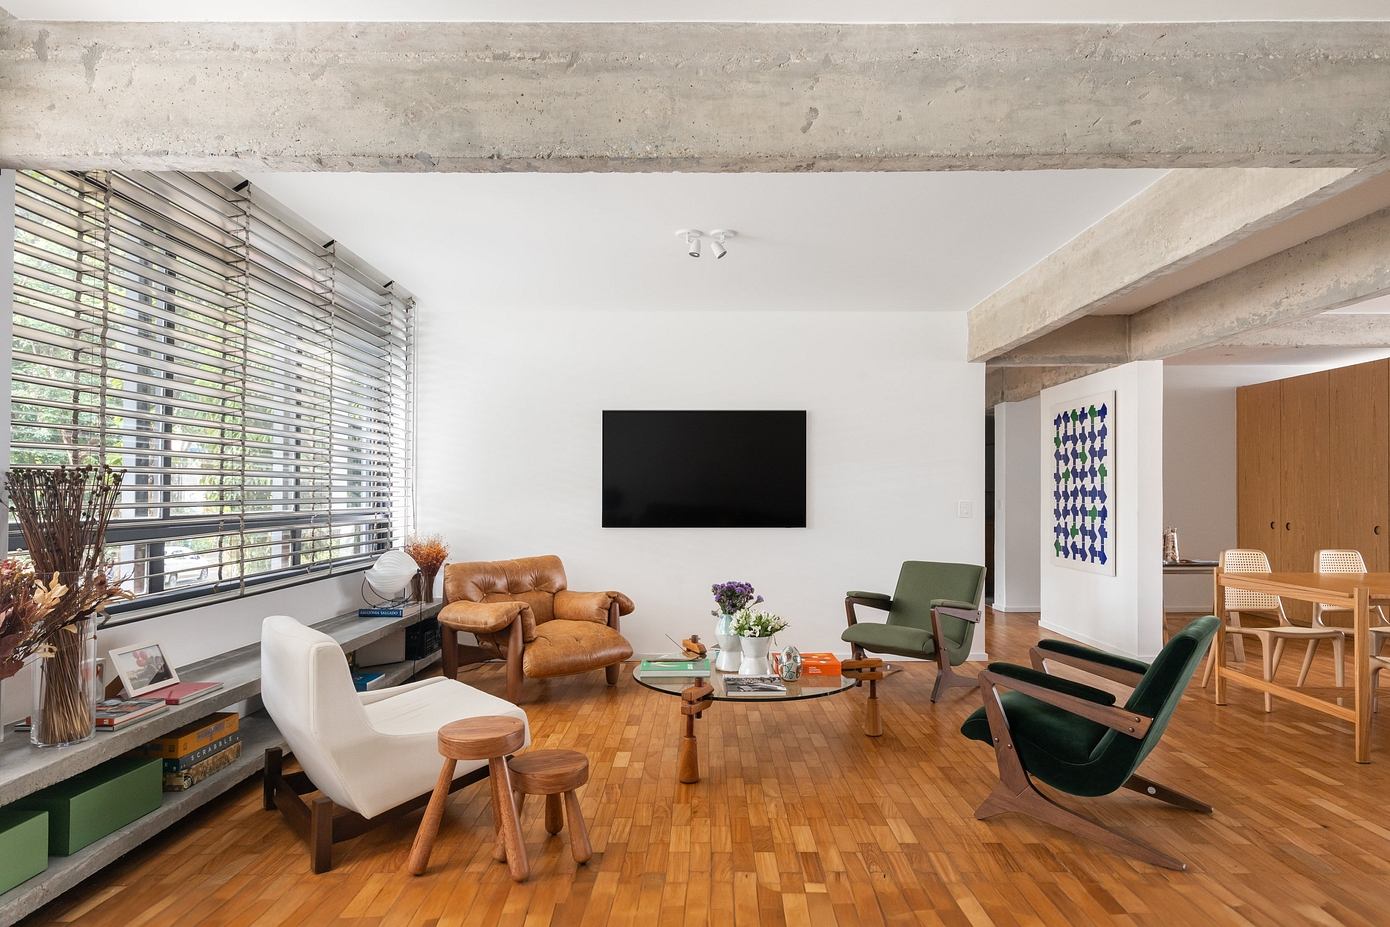 Apartment 114S: Bloco Arquitetos’ Modernist Masterpiece